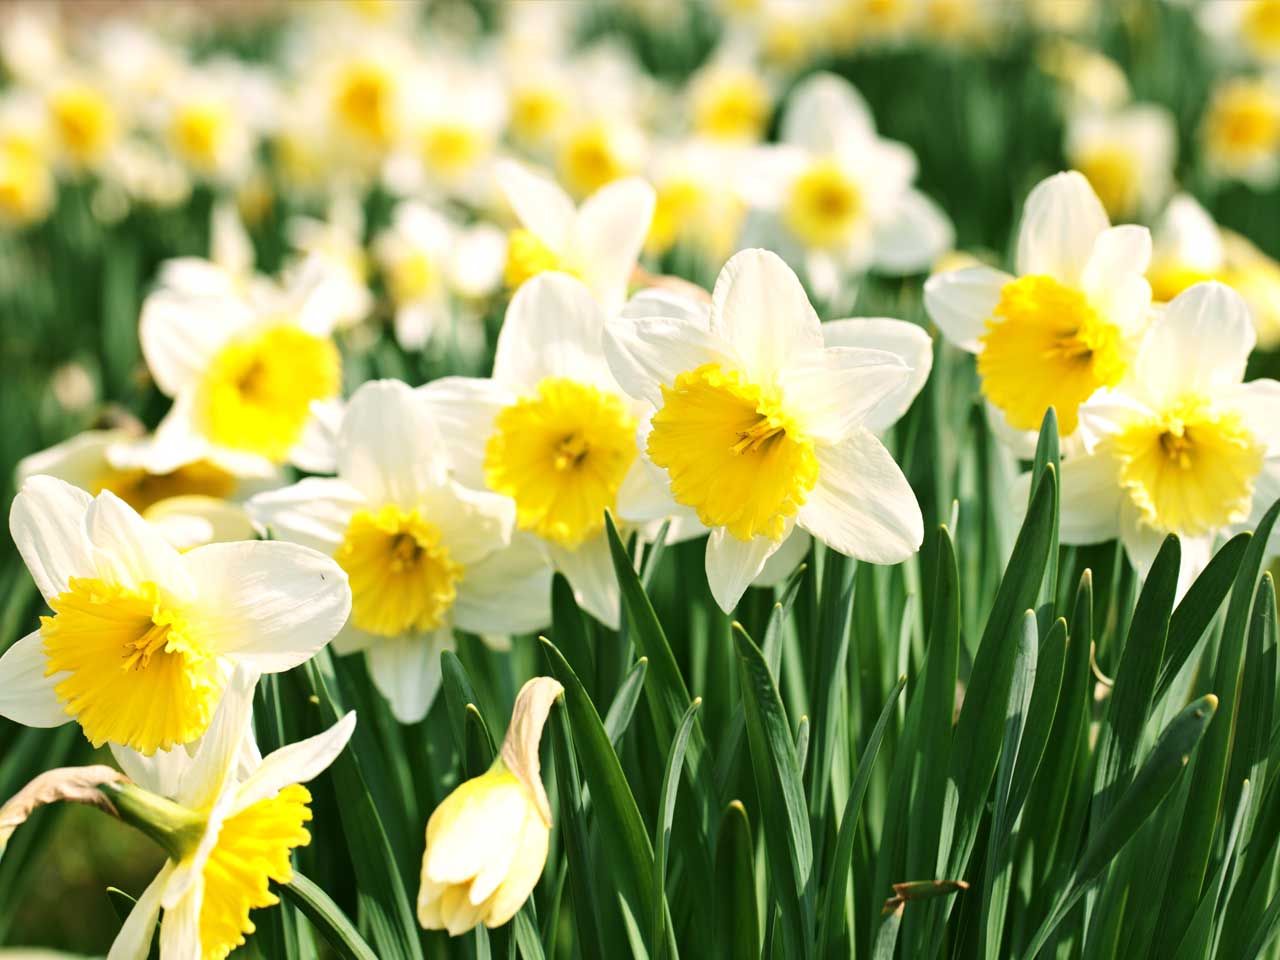 How to grow daffodils - Saga